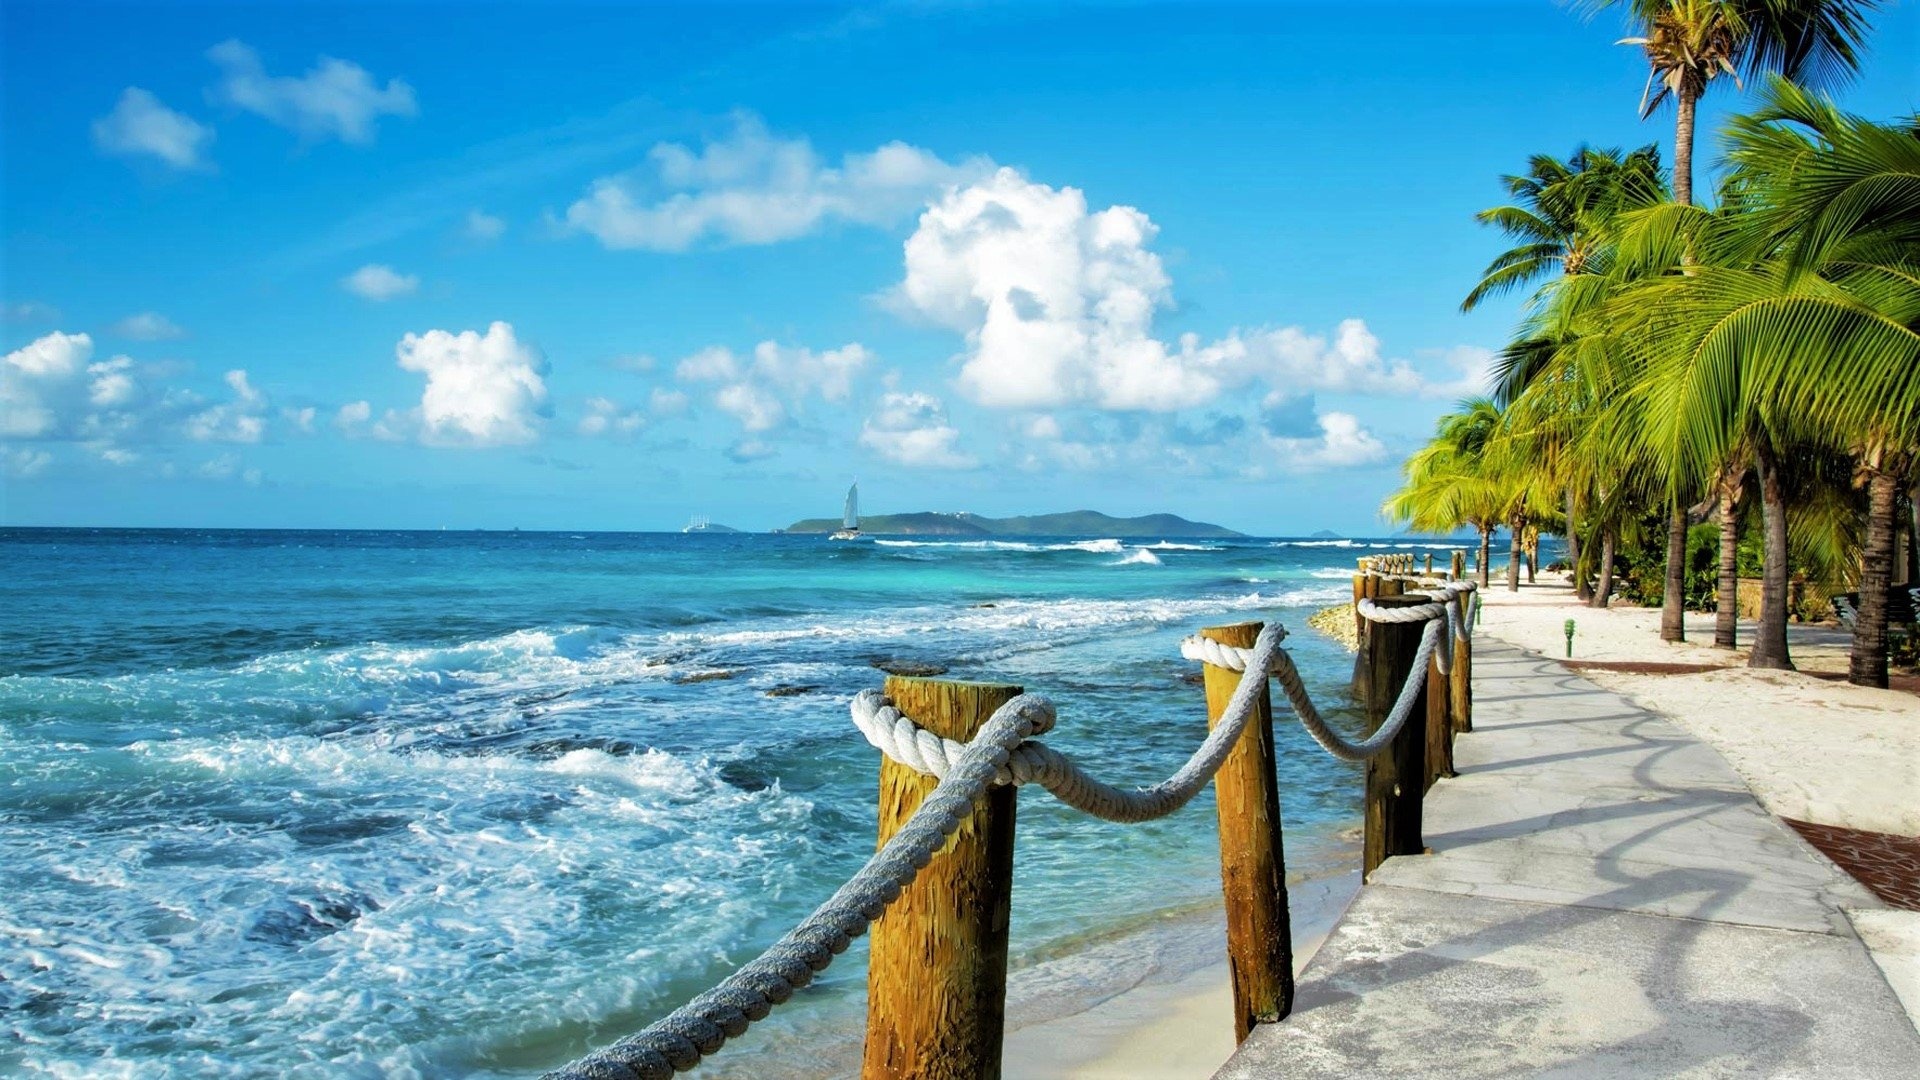 Caribbean Sea, Tropical paradise, Azure waters, Beach paradise, 1920x1080 Full HD Desktop